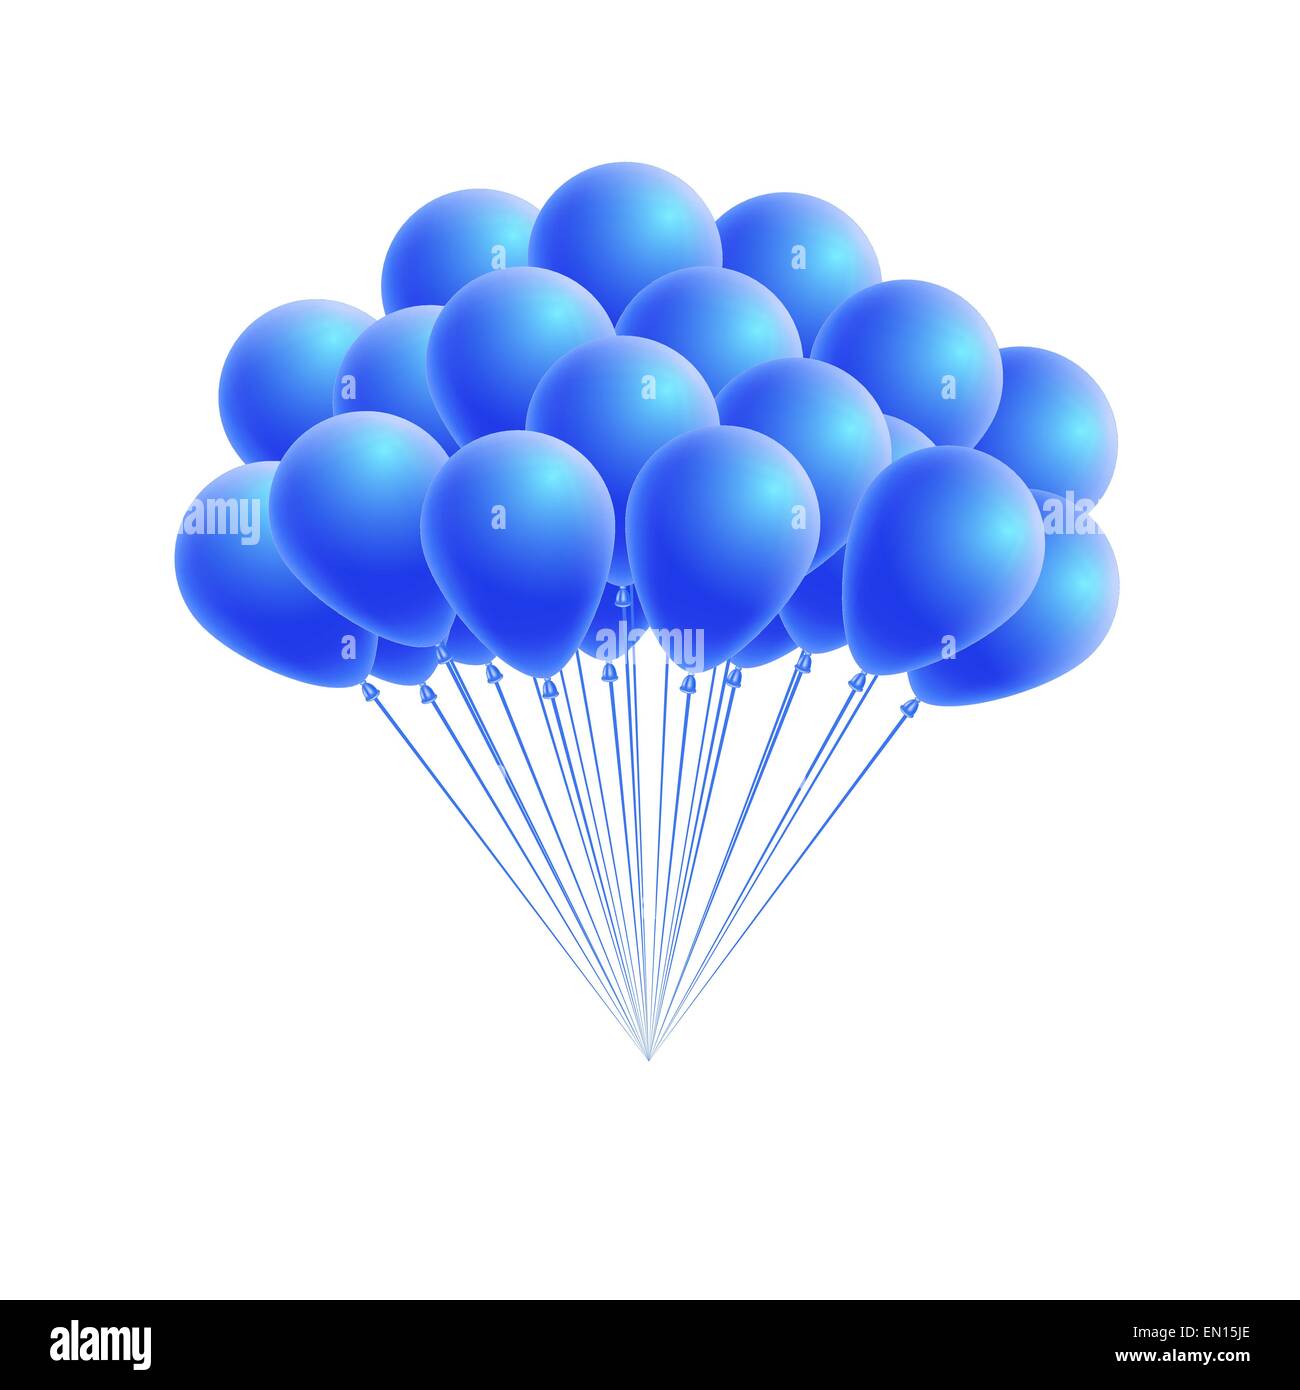 Anniversaire Bleu Couleur Fond Avec Des Ballons Bleus Des Drapeaux Vecteur  par ©mygraphicstock@gmail.com 513613776